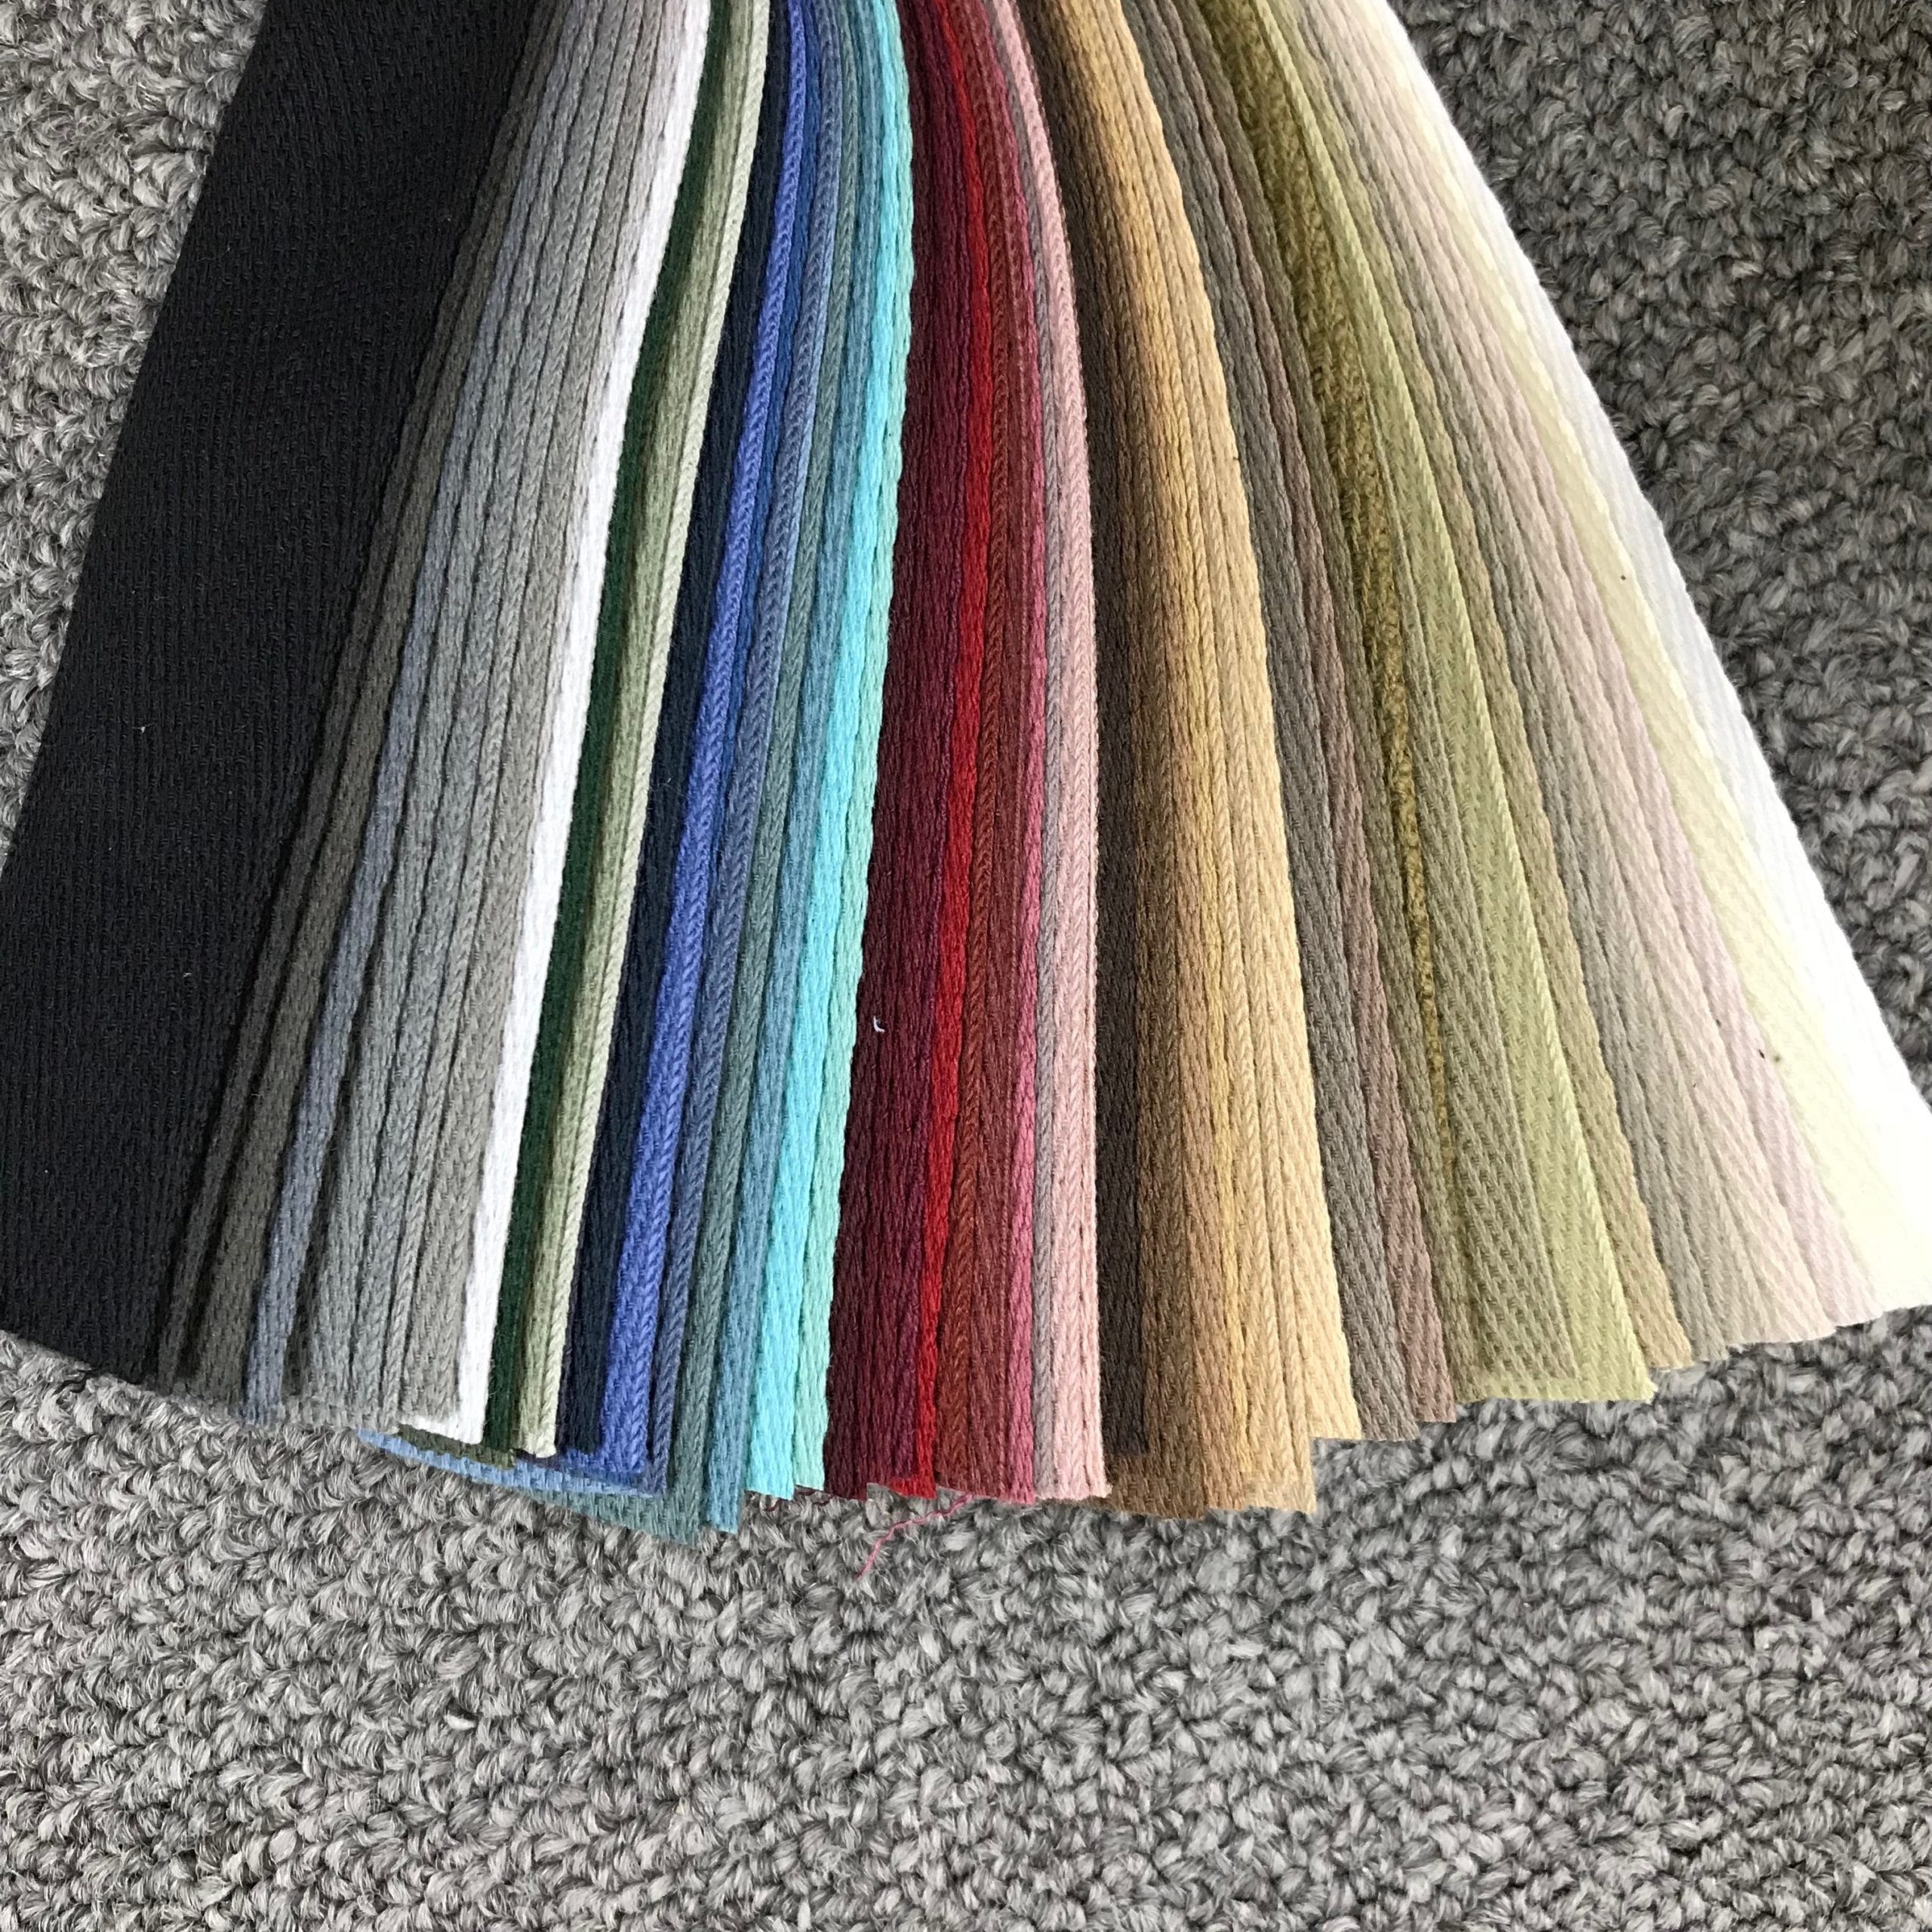 Bond Cotton & Serge Tape Color Sample Deck - Bond Products Inc